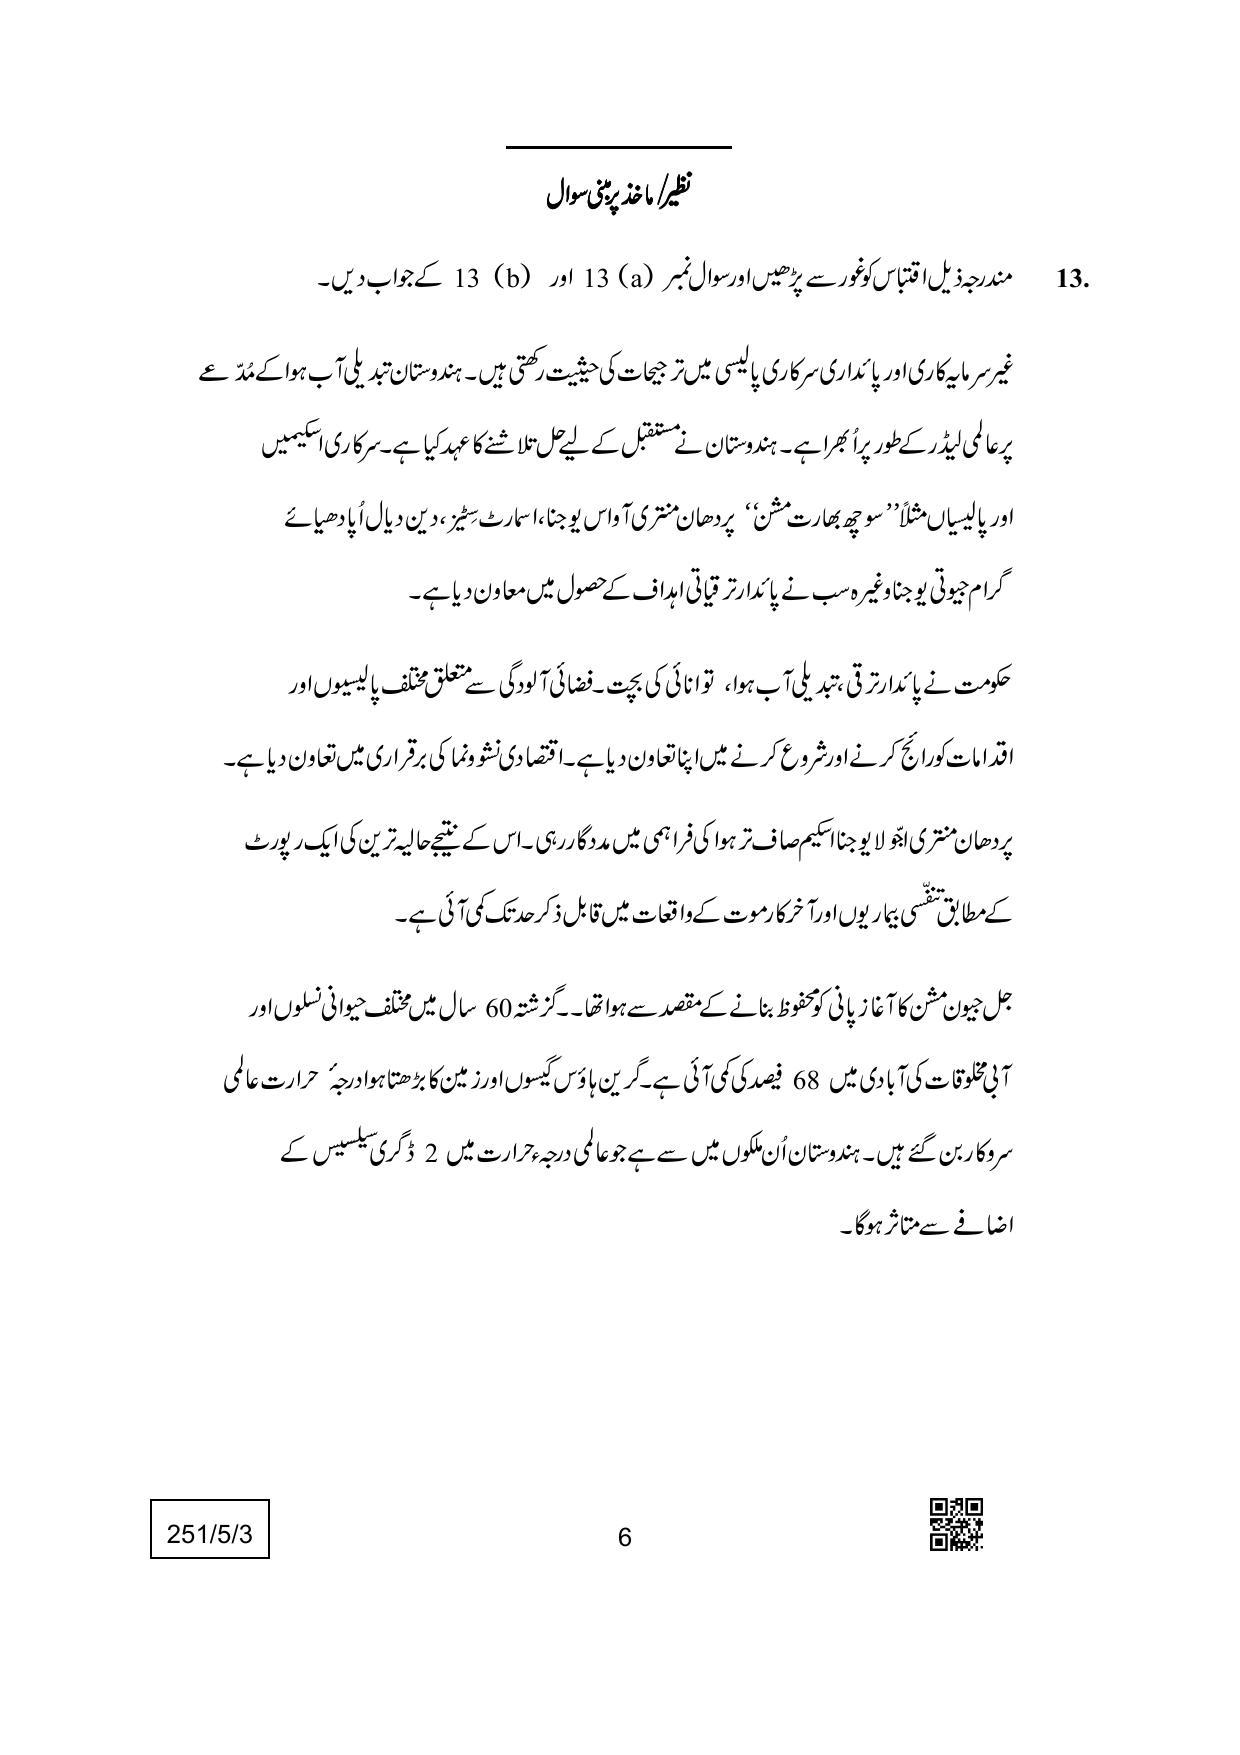 CBSE Class 12 251-5-3 (Economics) Urdu Version 2022 Question Paper - Page 6